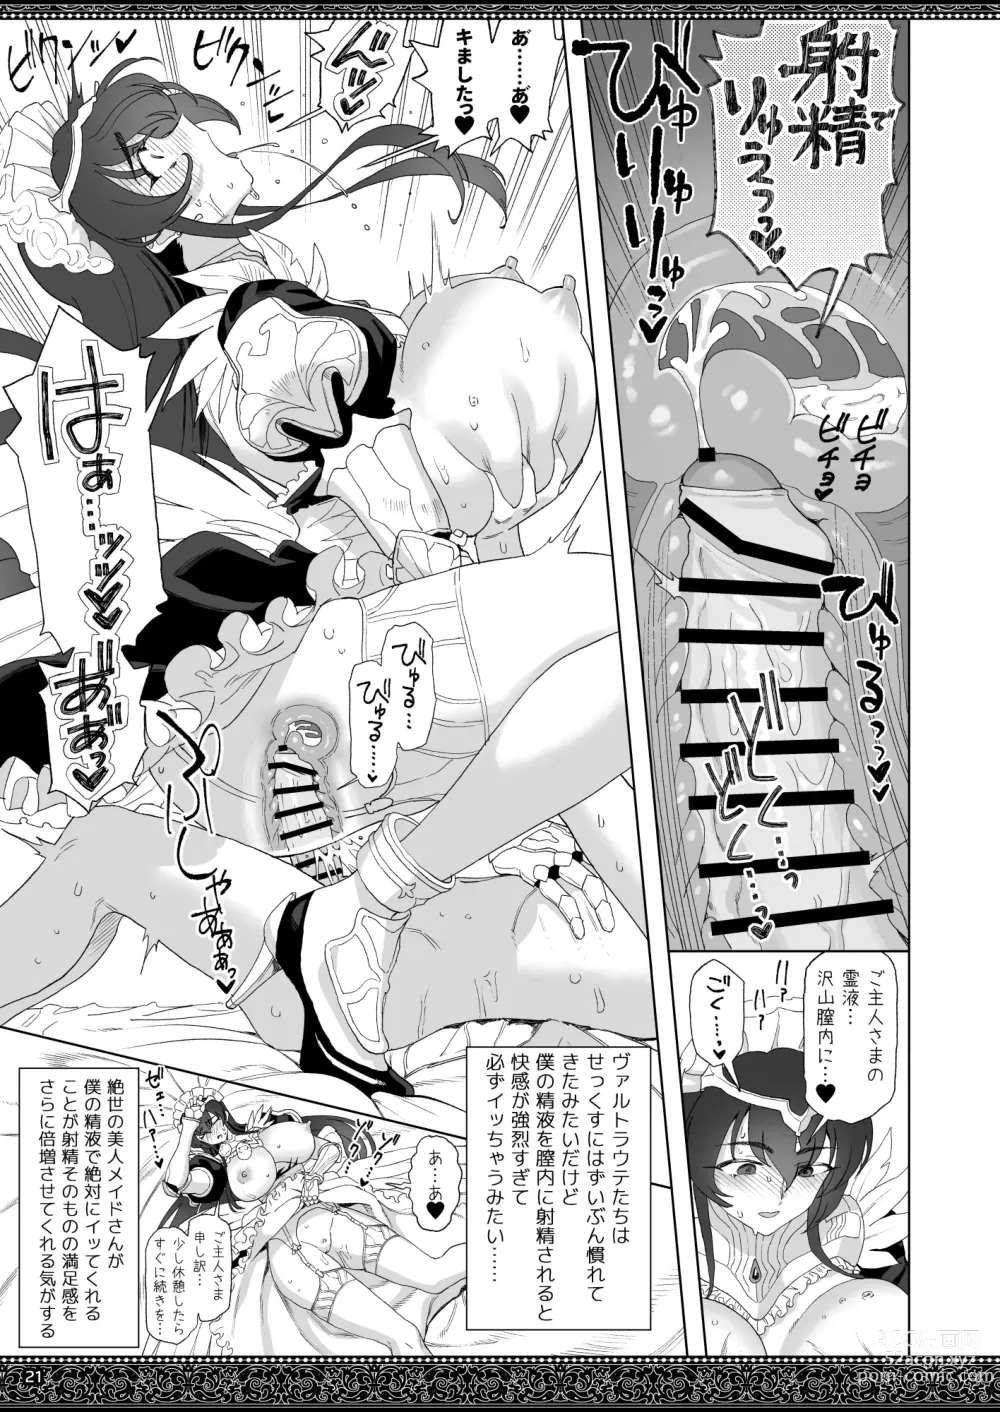 Page 21 of doujinshi Tenjousekai no Maid-tachi 2